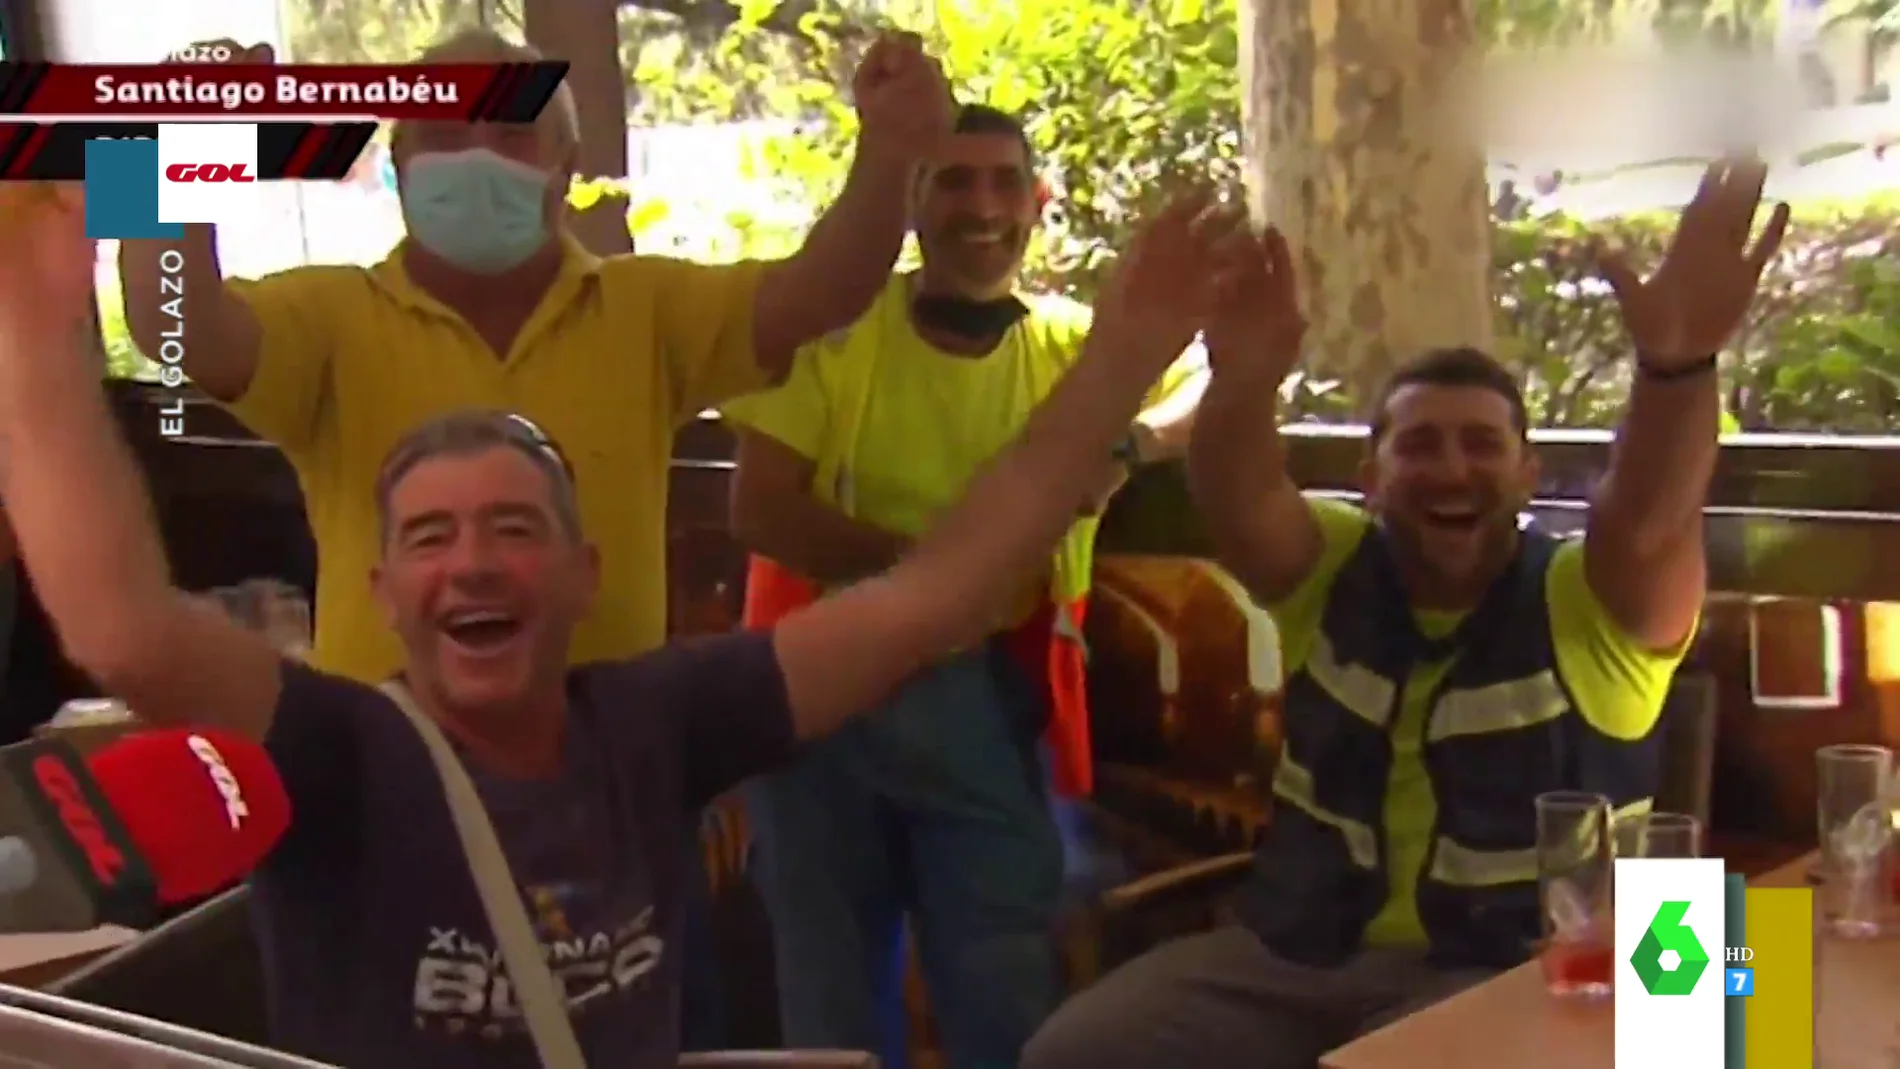 El divertido troleo de unos aficionados del Atlético a un reportero que les pide cantar el himno del Madrid en directo